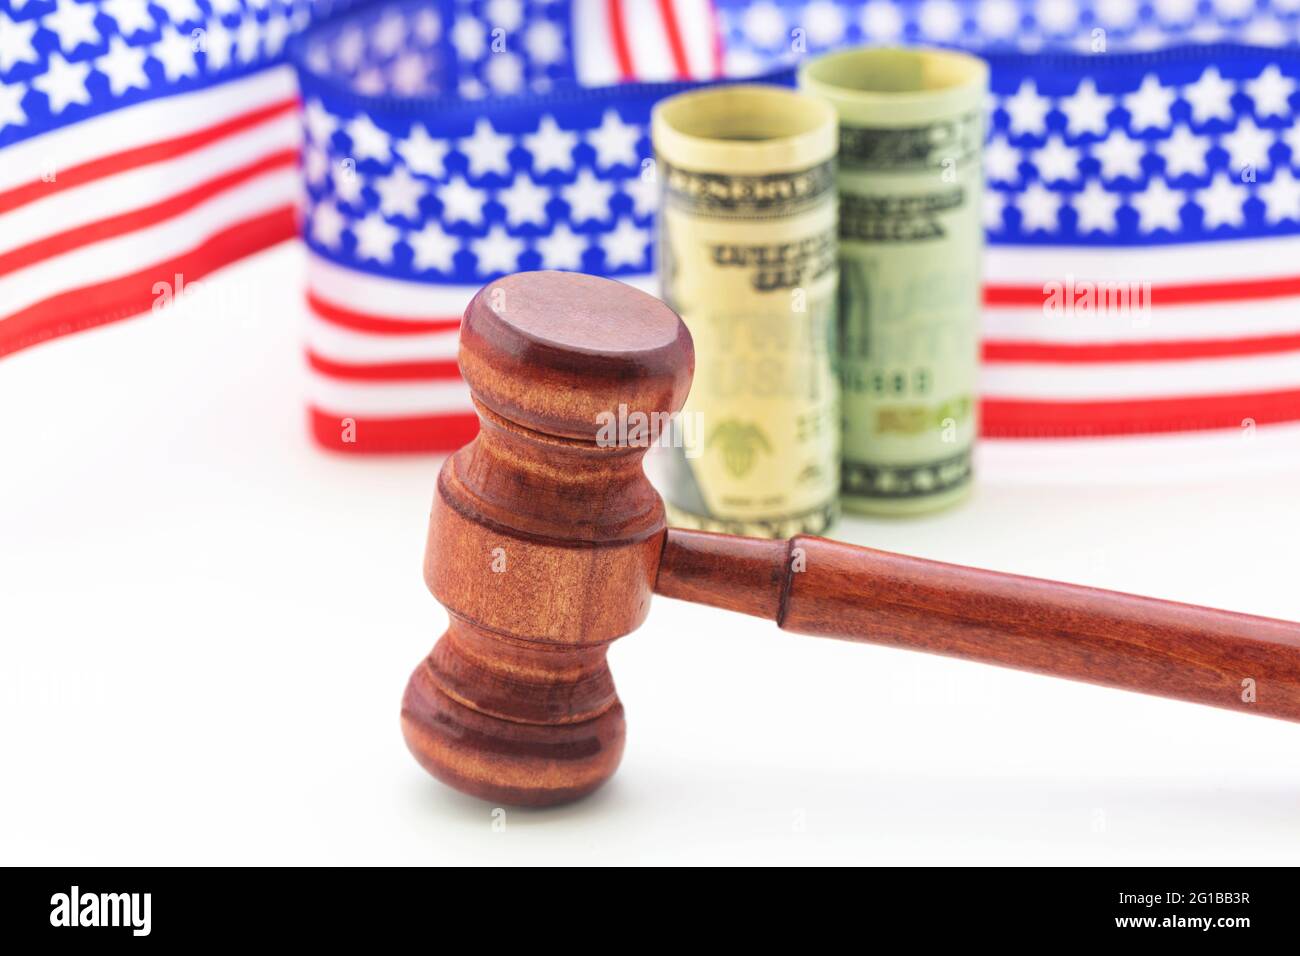 Le financement de la justice et de l'équité américaines est reflété par des symboles de gavel, de monnaie et de ruban de conception de drapeau Banque D'Images